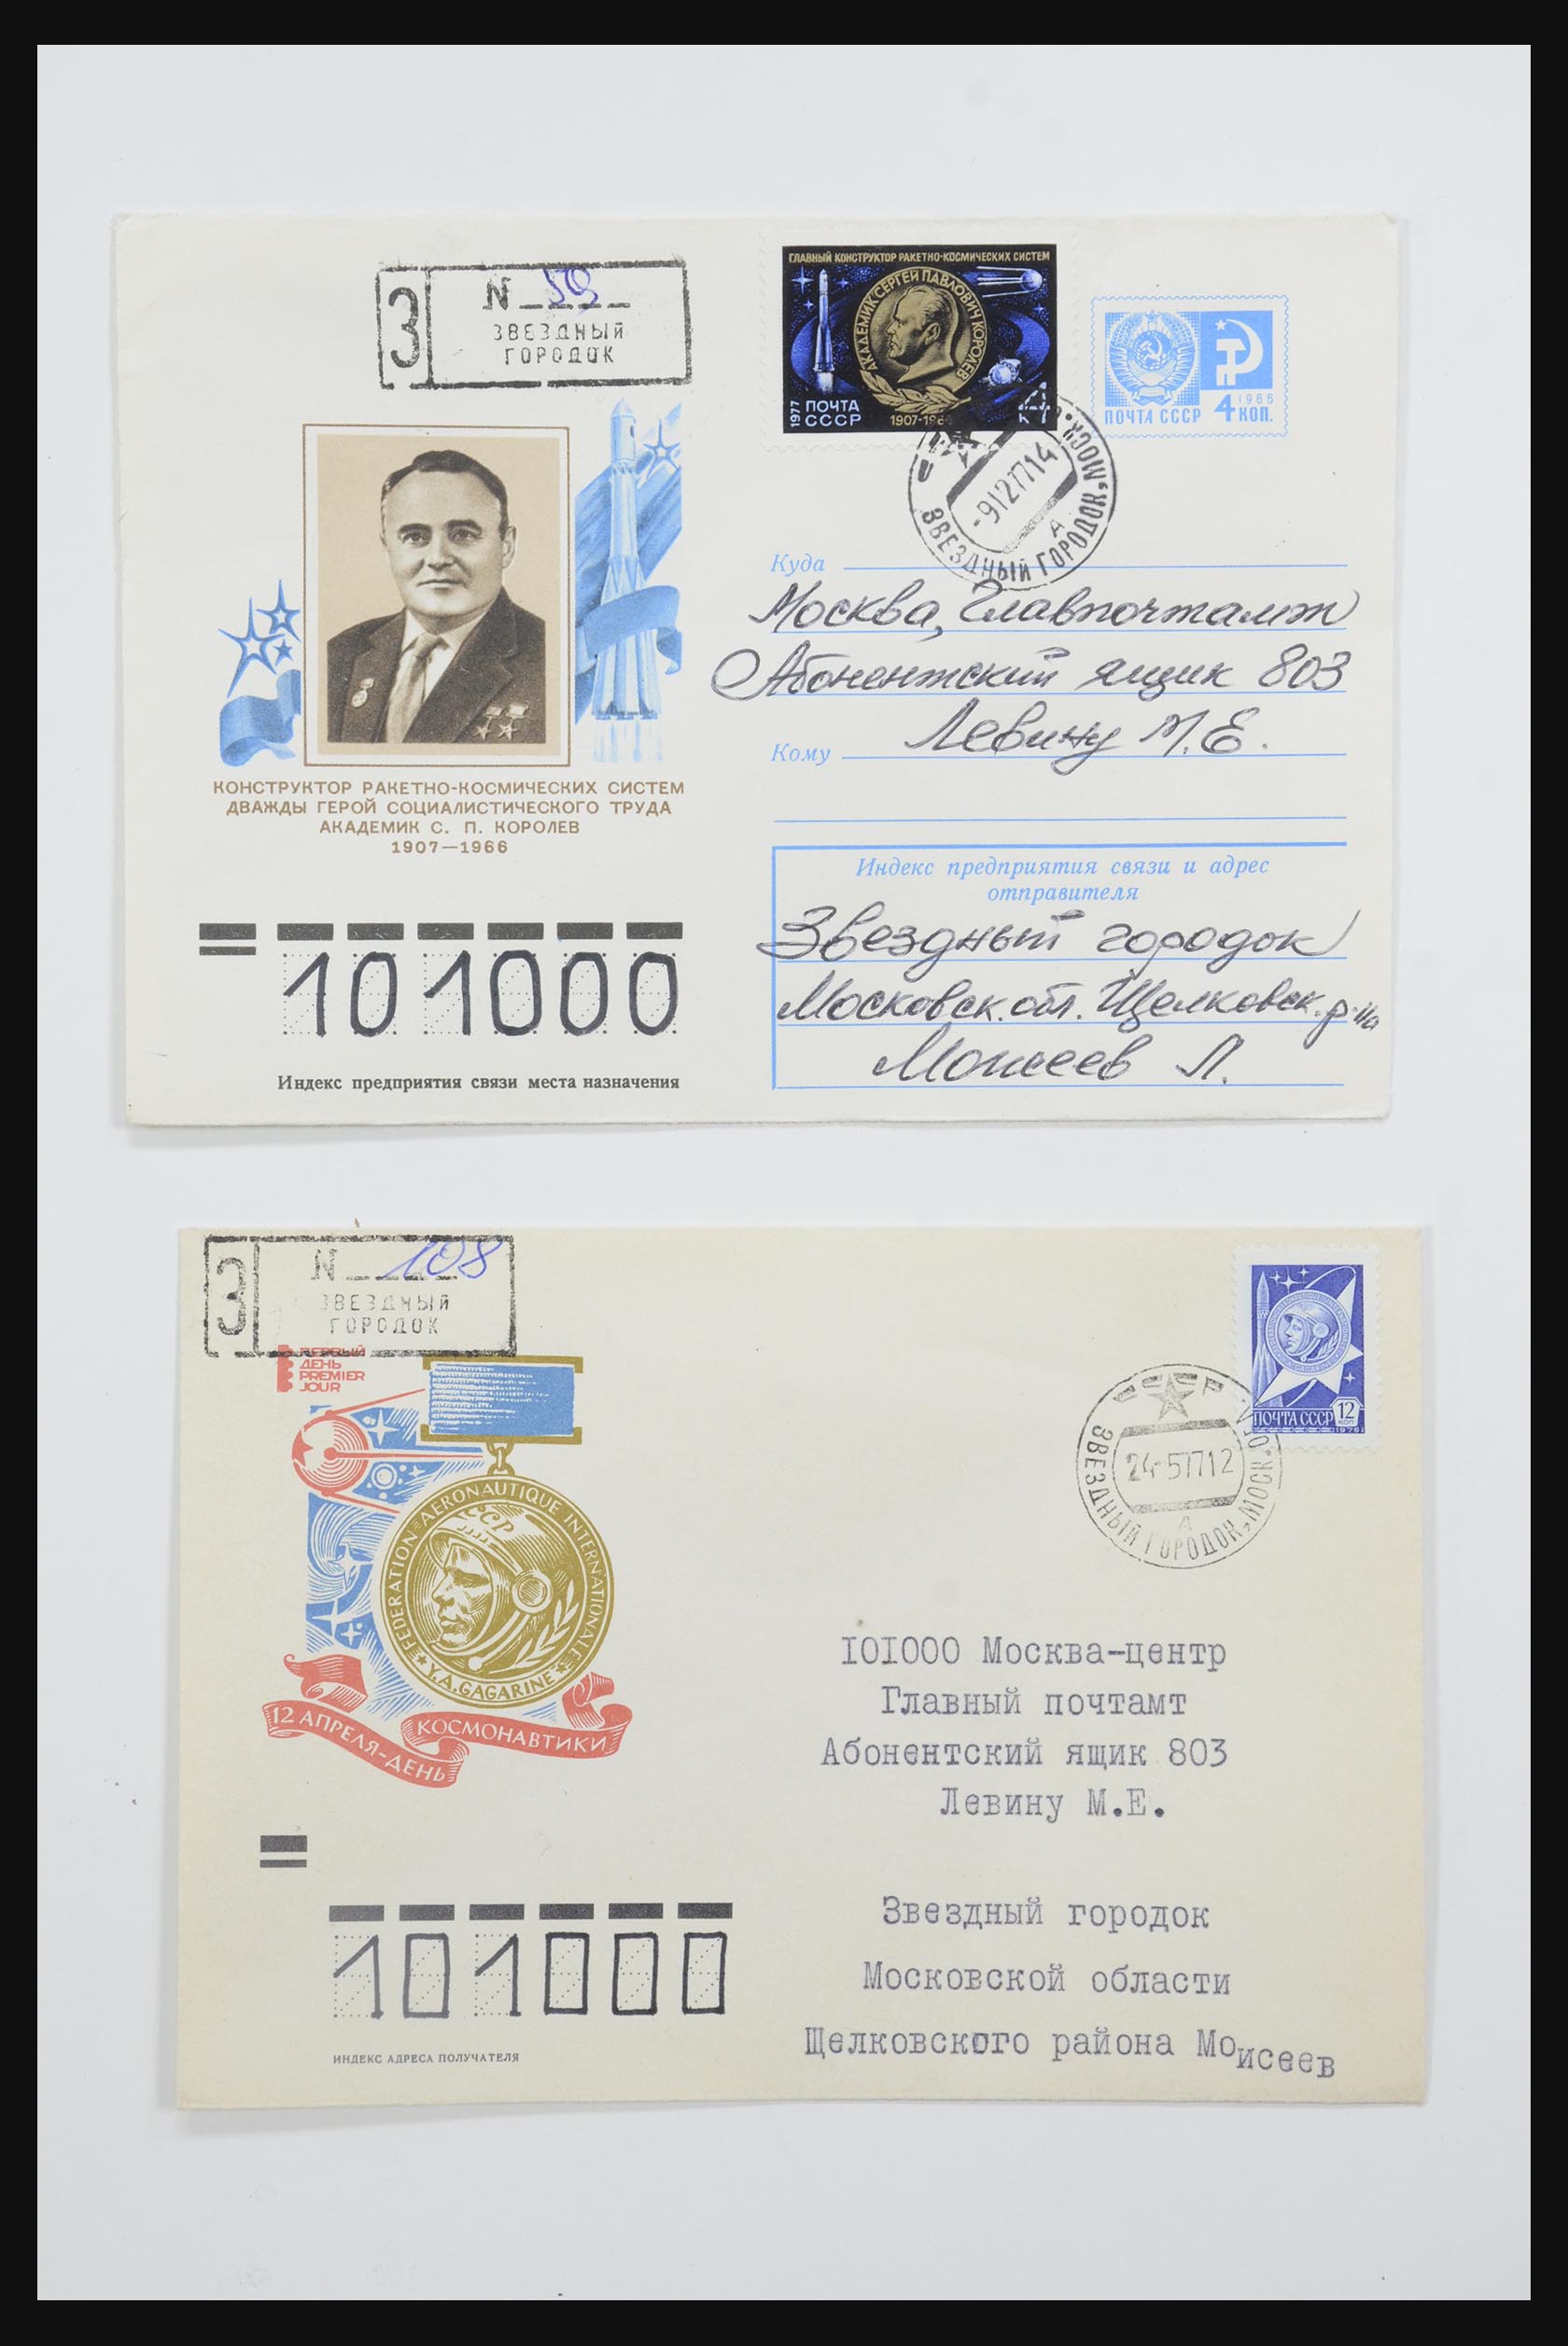 31605 0012 - 31605 Rusland postwaardestukken jaren 50-60.